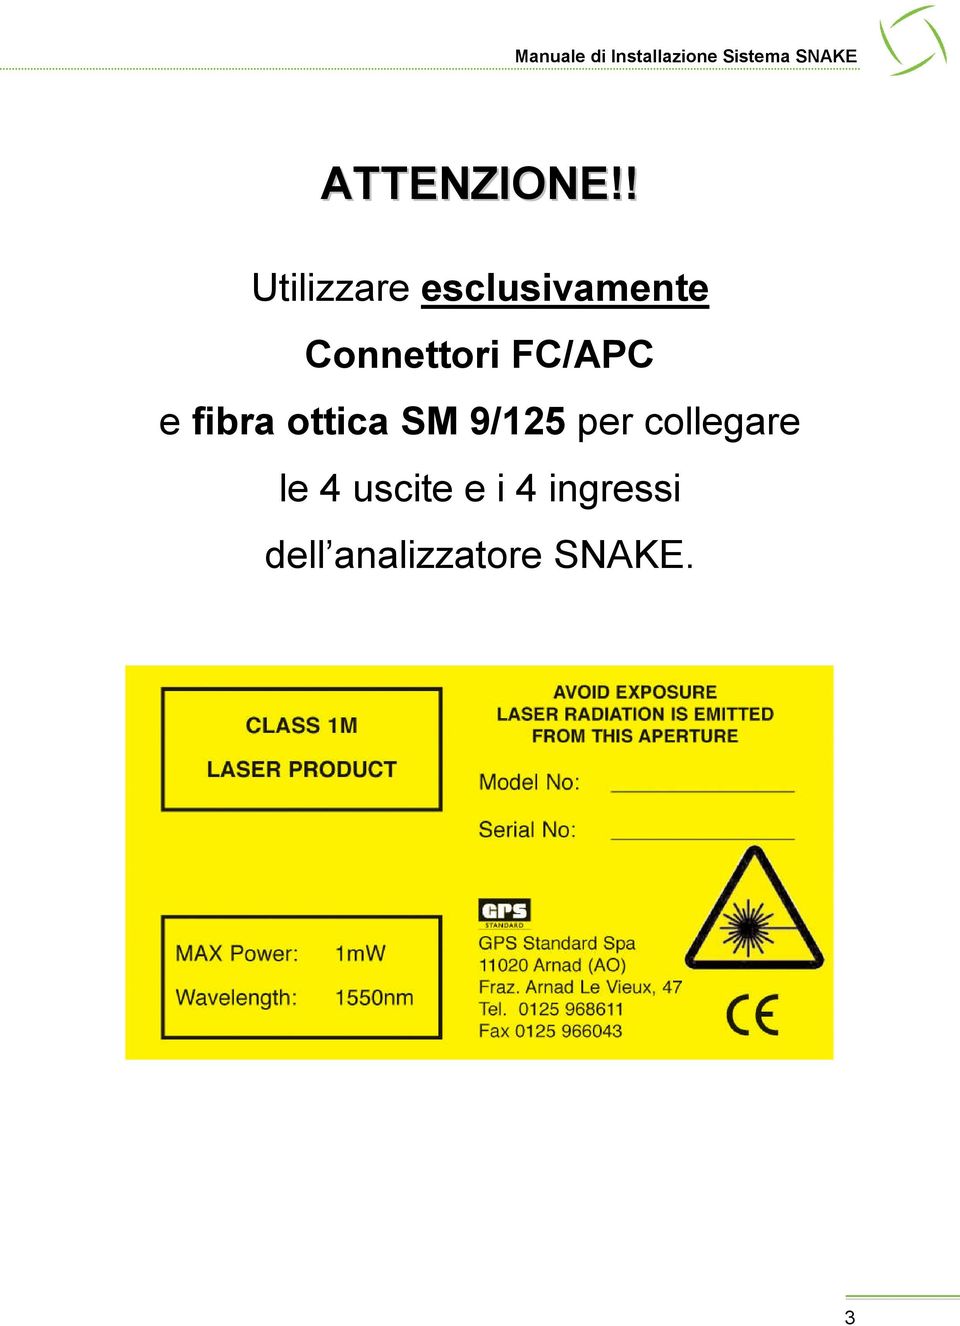 Connettori FC/APC e fibra ottica SM